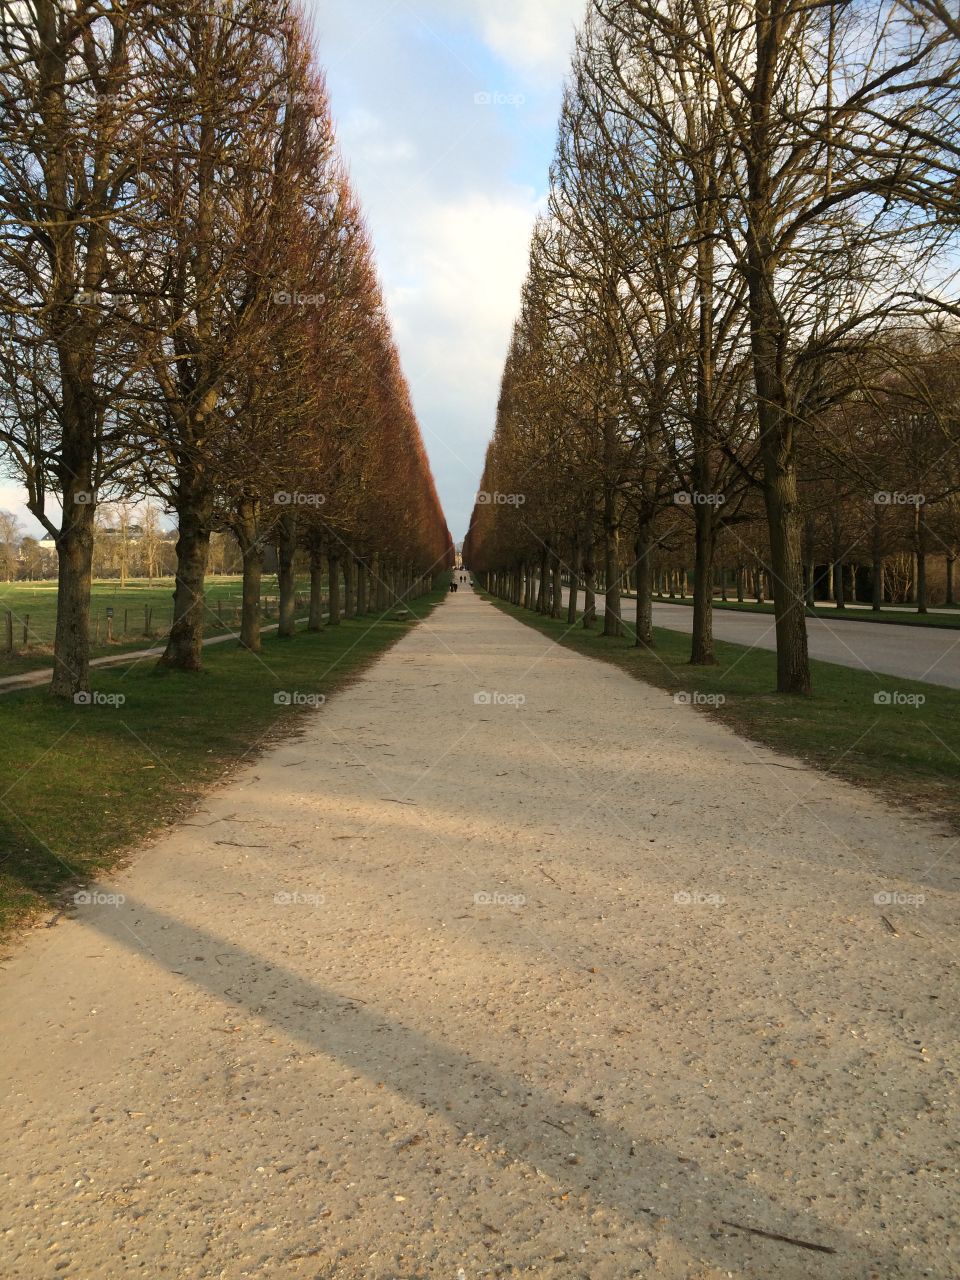 Garden path. Marie Antoinette's estate, Versailles Chateaux, Paris, France